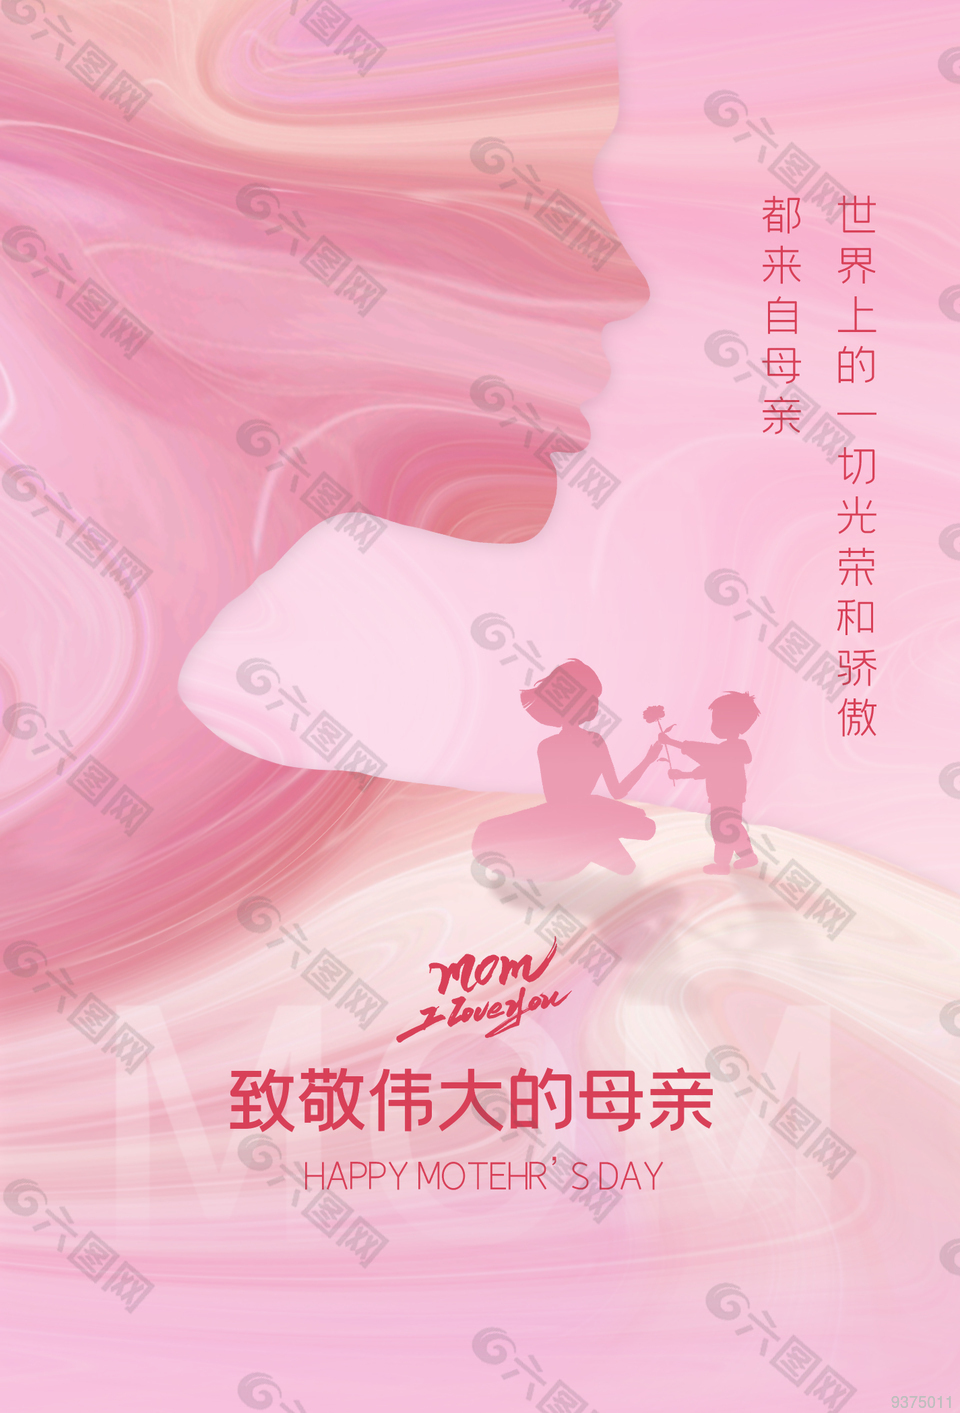 母亲节节日促销海报设计